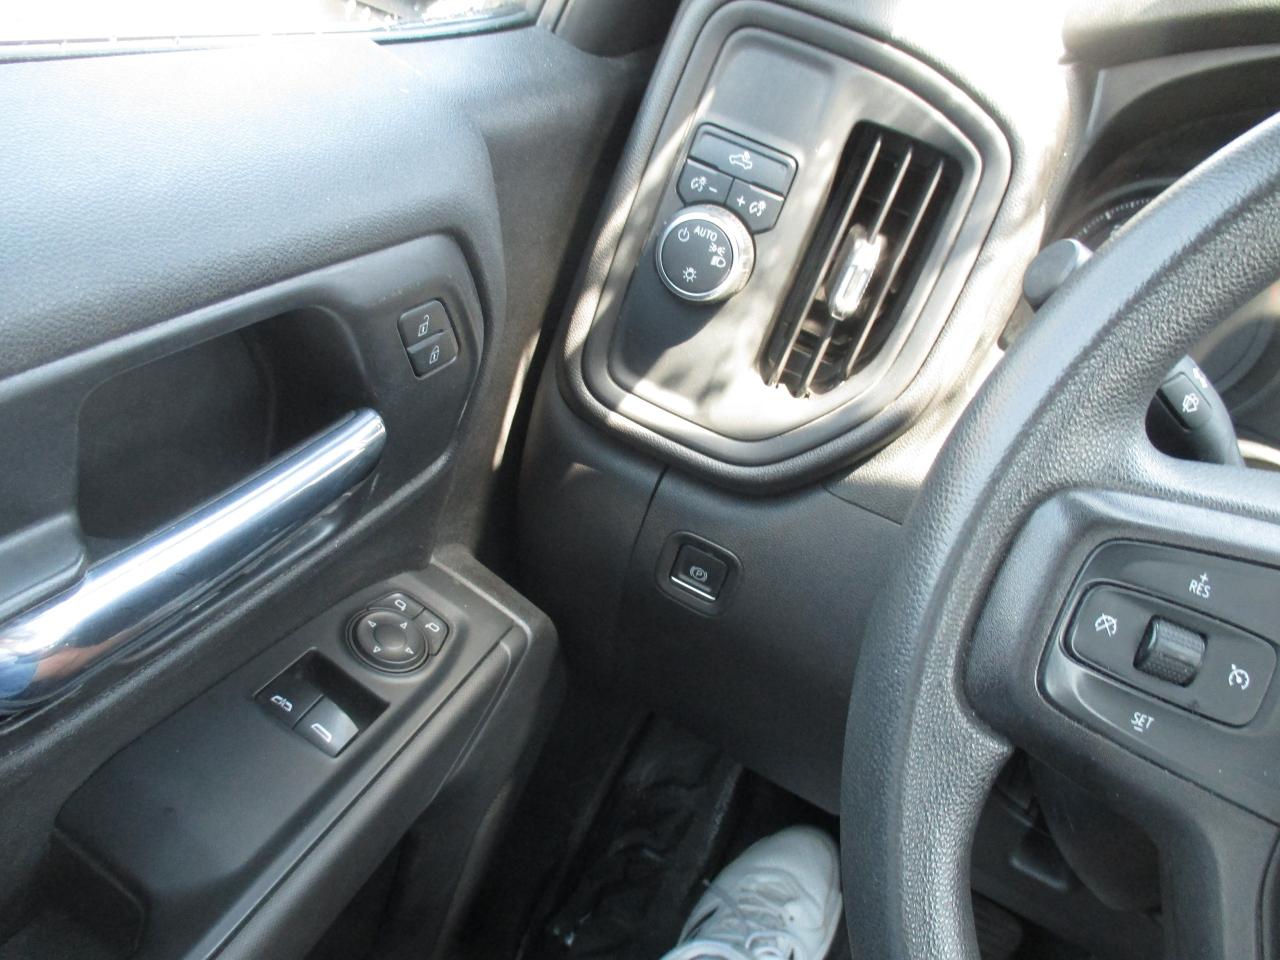 2021 Chevrolet Silverado 1500 REG CAB,LONG BOX.2WD - Photo #10